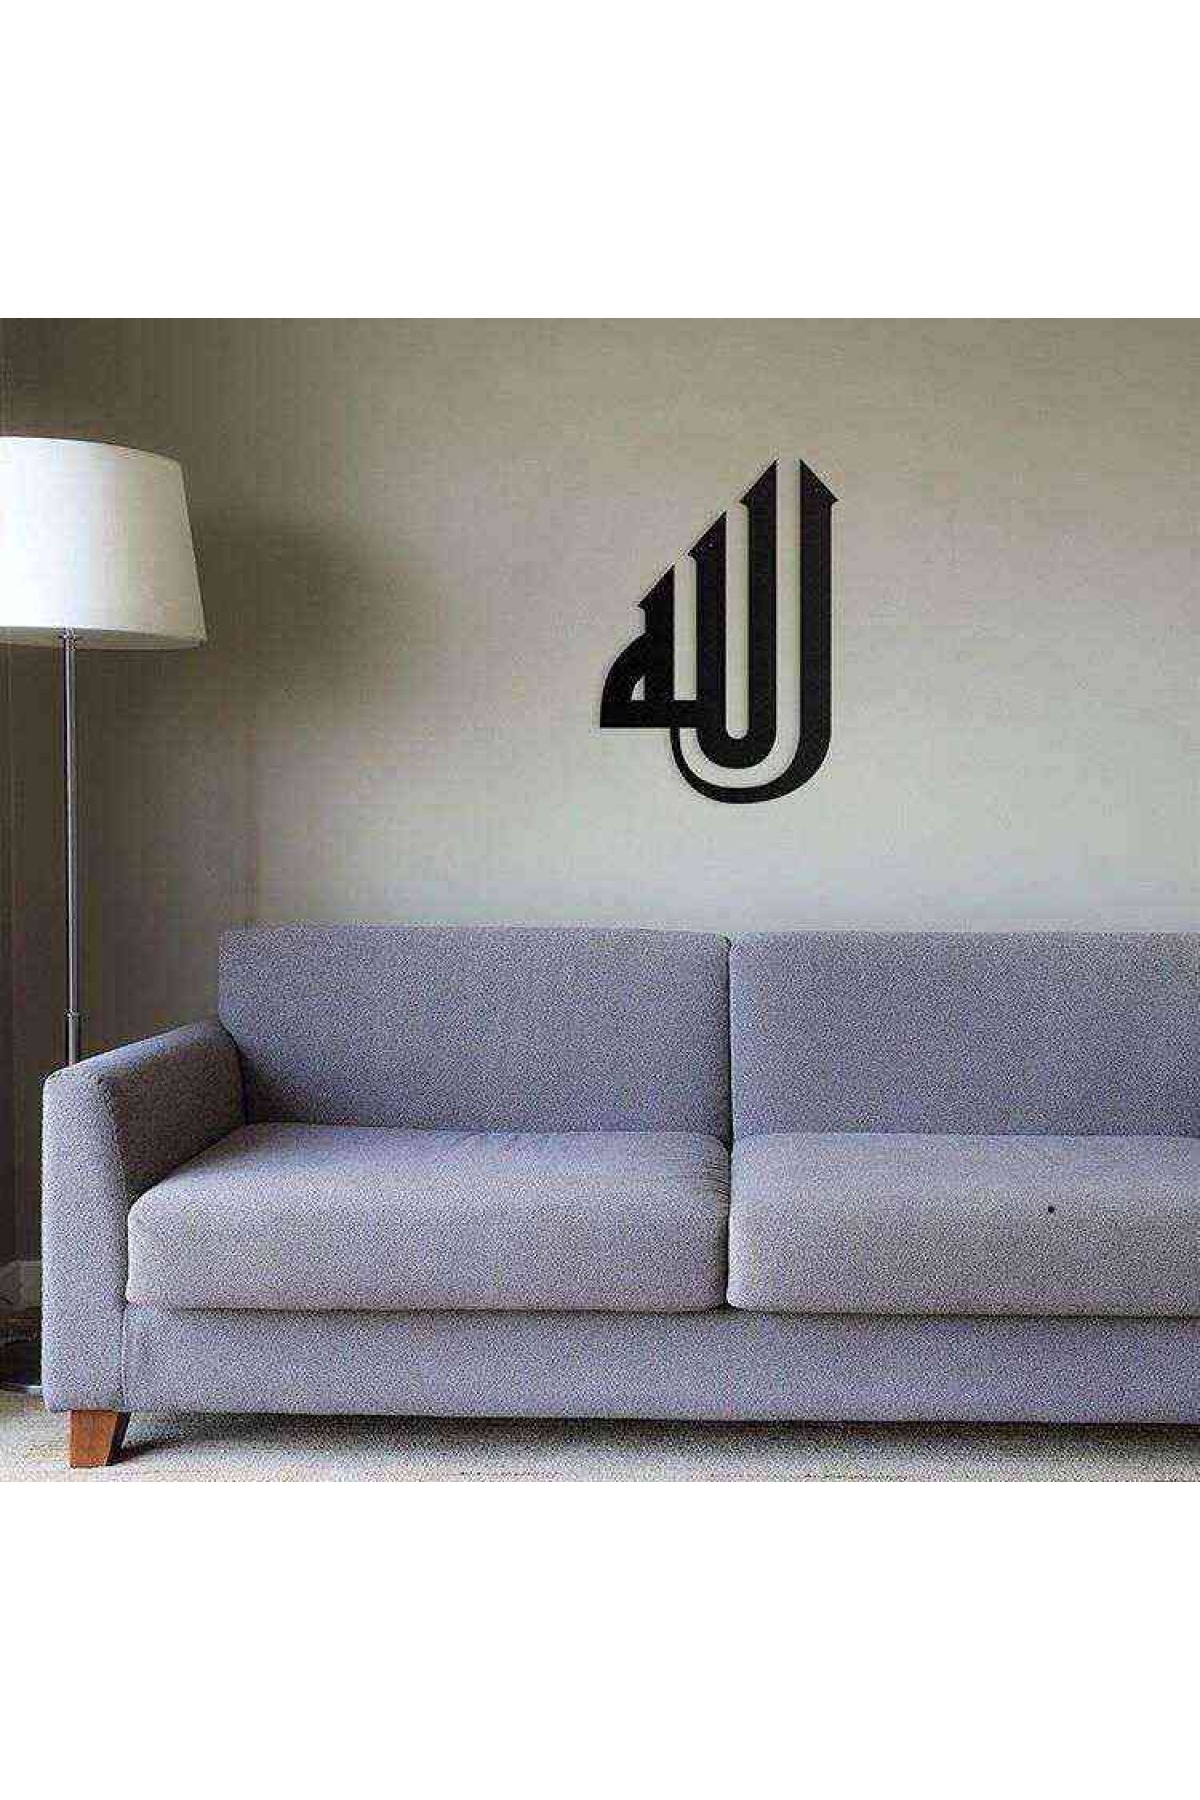 Allah Yazılı 3D Mdf Tablo Evinize Ofisinize Yeni Tarz Wall Art